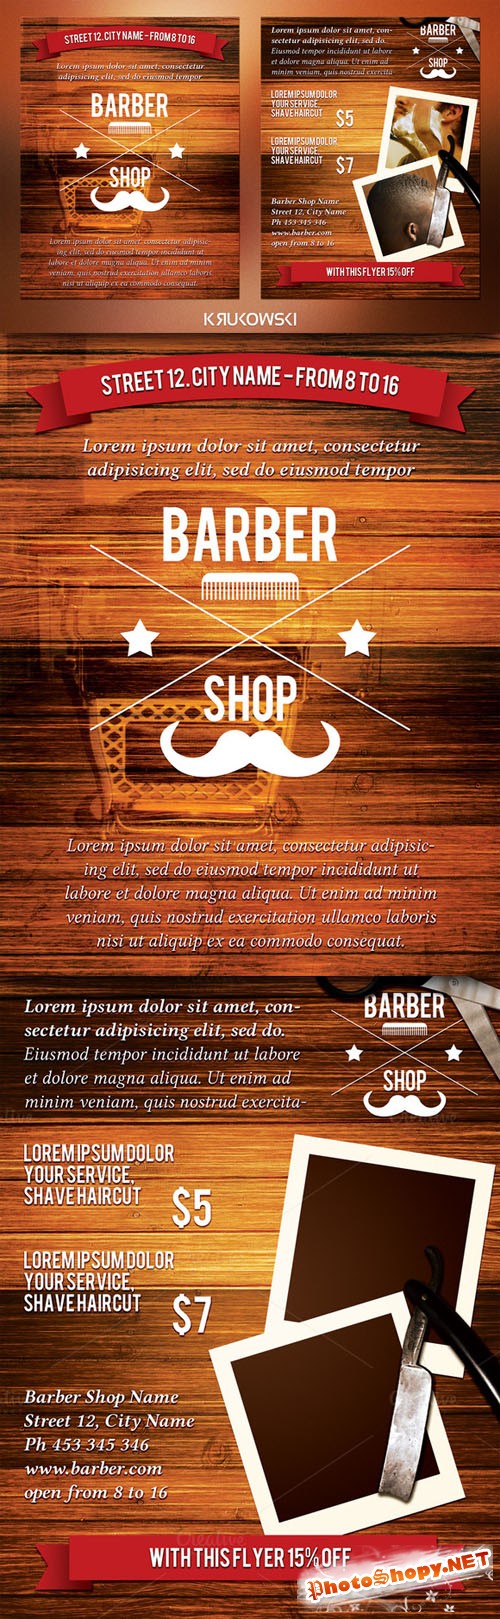 CreativeMarket - Barber Shop 2 Sided Flyer